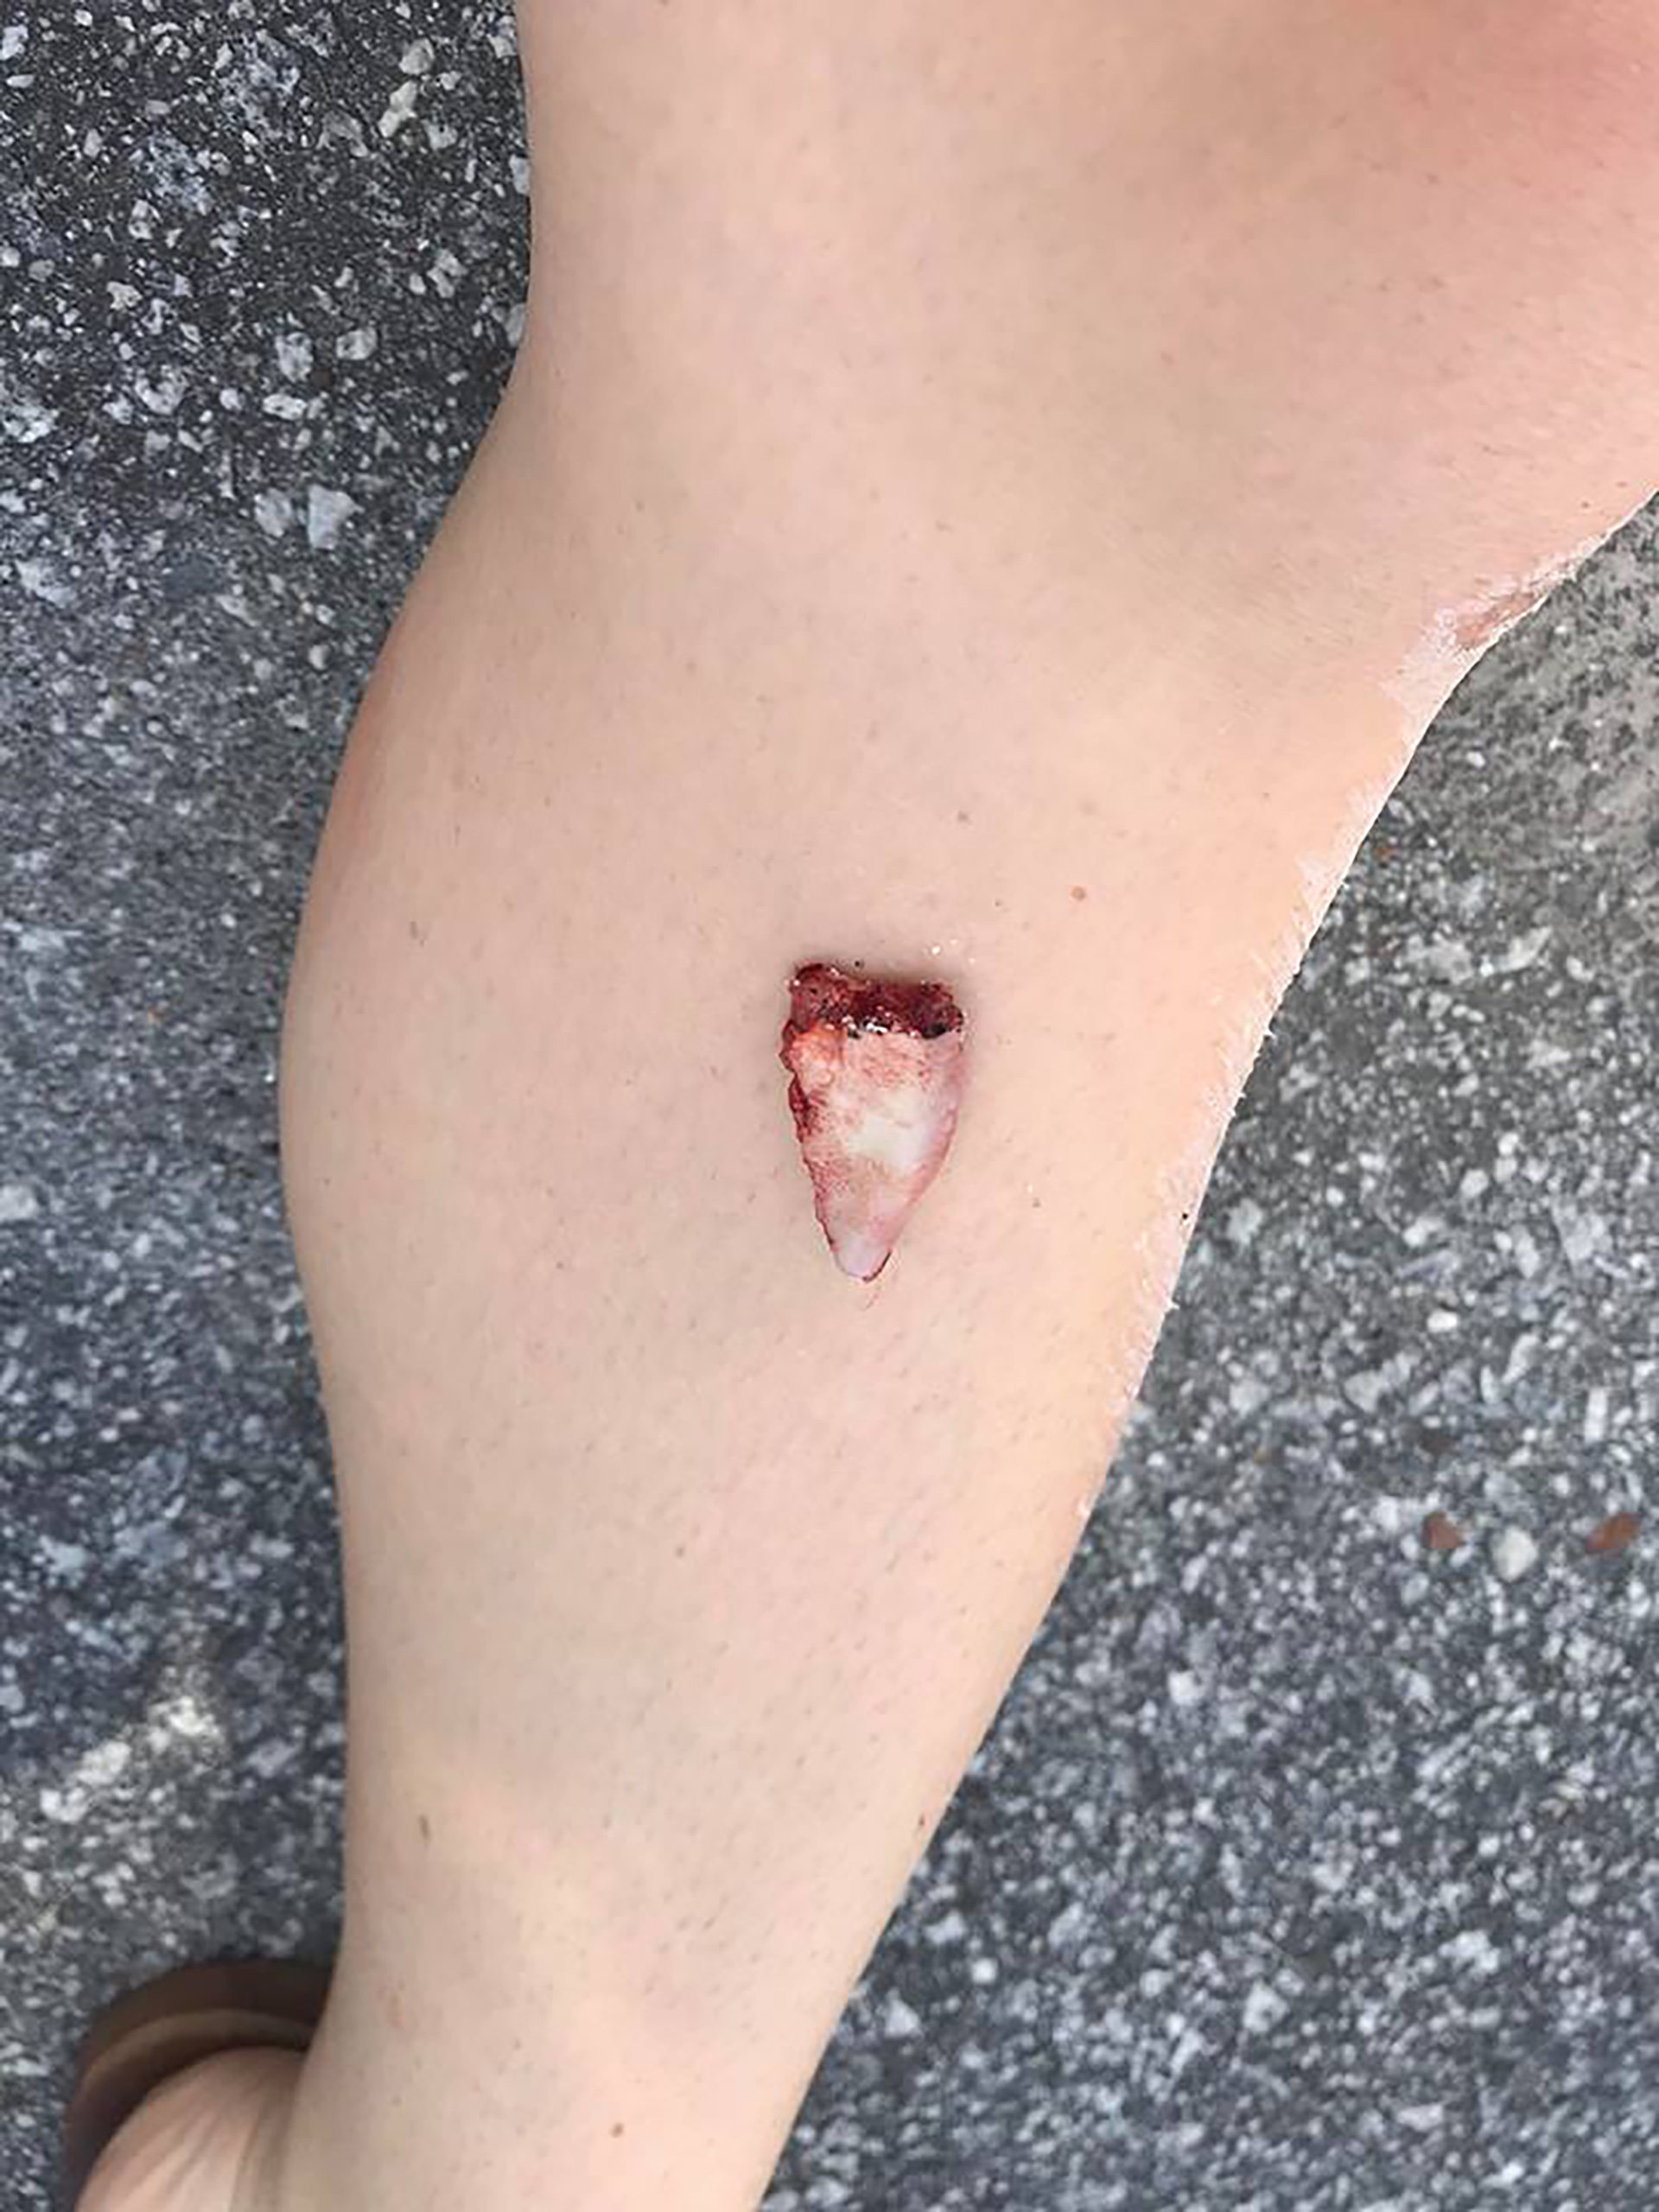 Kayla Hayes tenía sobre su pierna parte del labio amputado (@KaylaHayes)